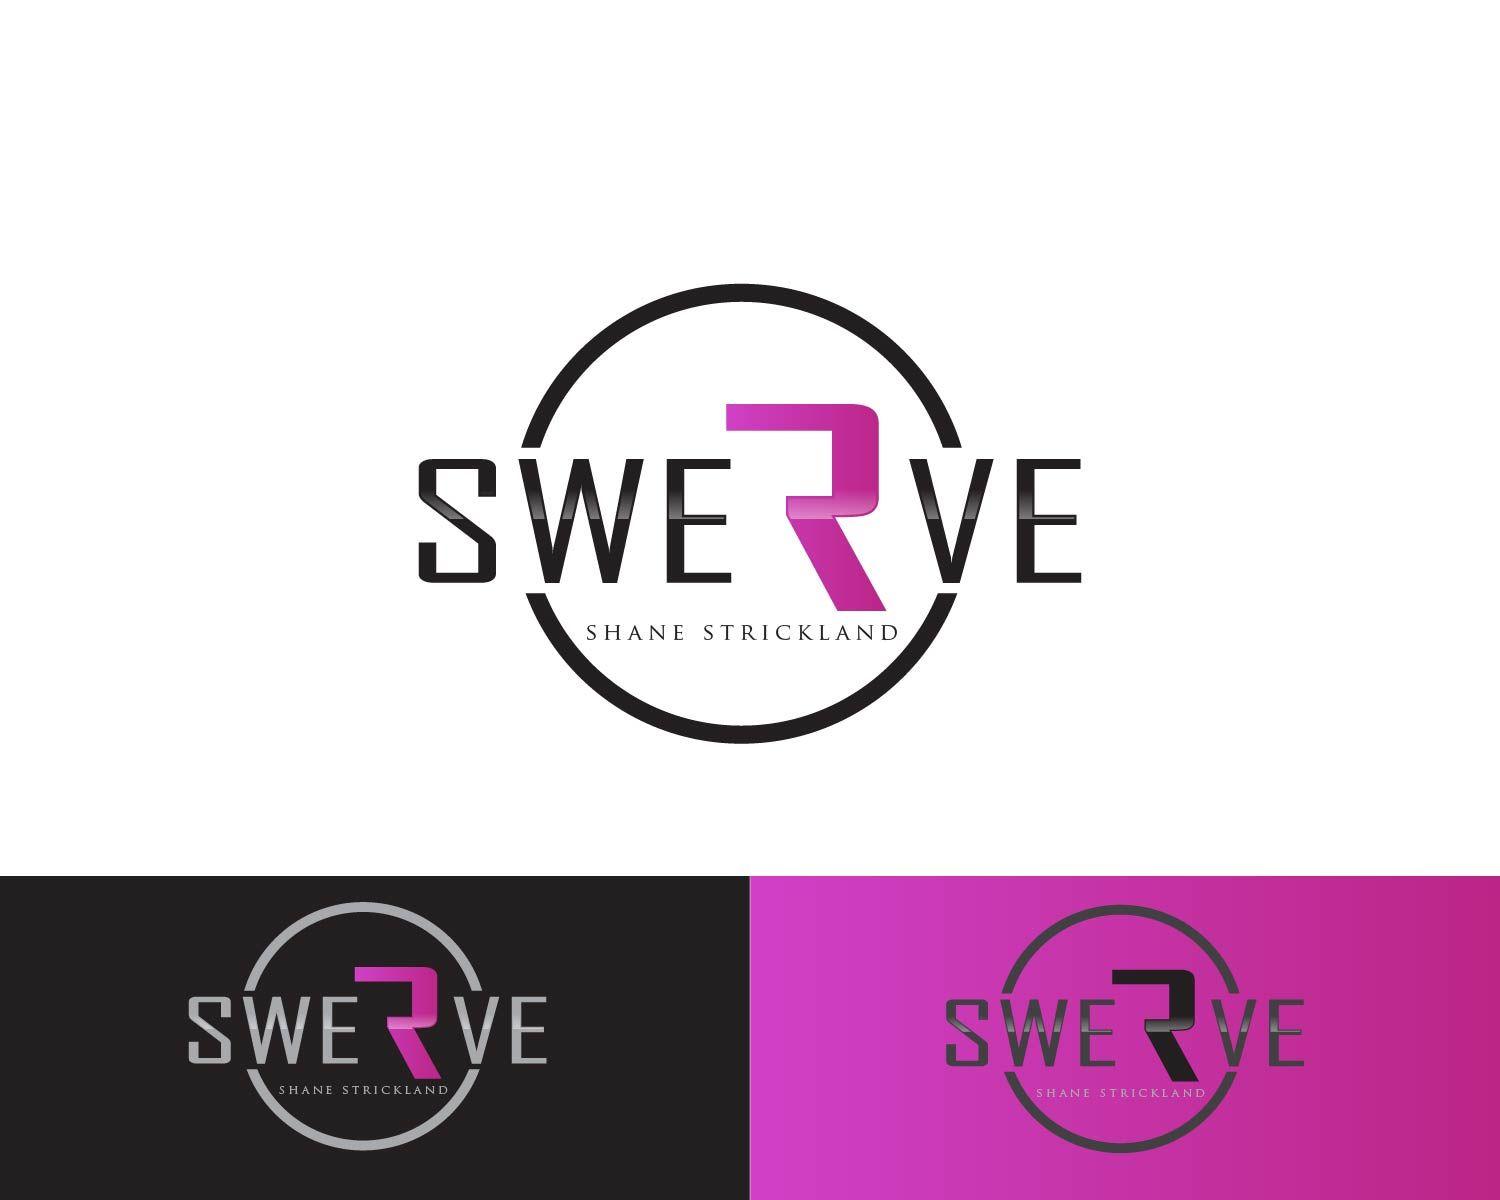 Swerve Logo - Logo Design Contest for Swerve (Pro Wrestler) | Hatchwise